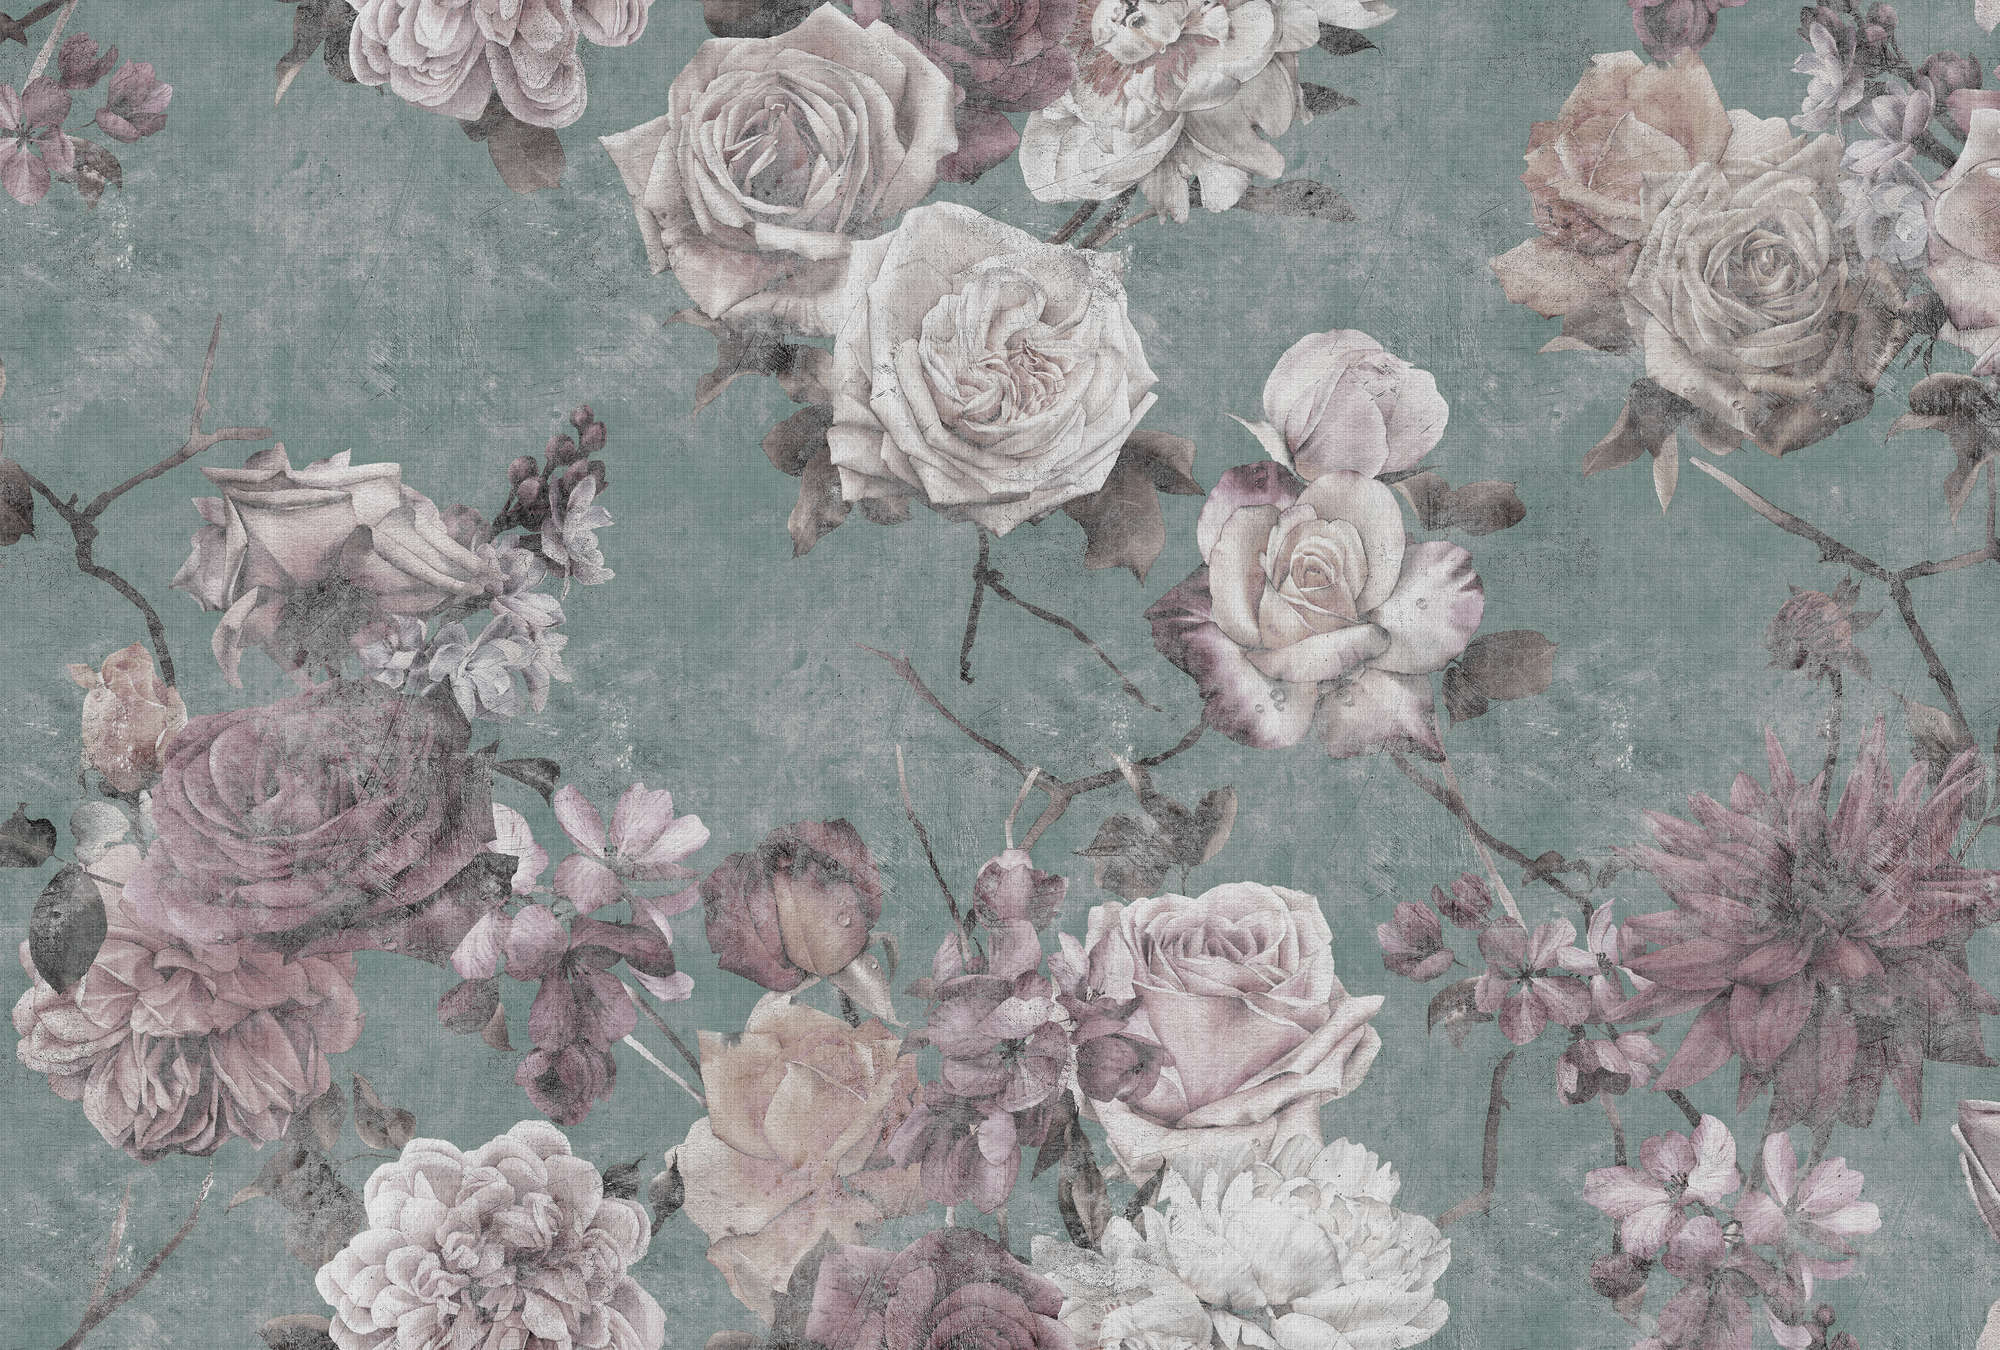             Sleeping Beauty 2 - Carta da parati con fiori di rosa in stile vintage - Natura qualita consistenza in lino naturale - Rosa, turchese | Panno liscio di qualità superiore
        